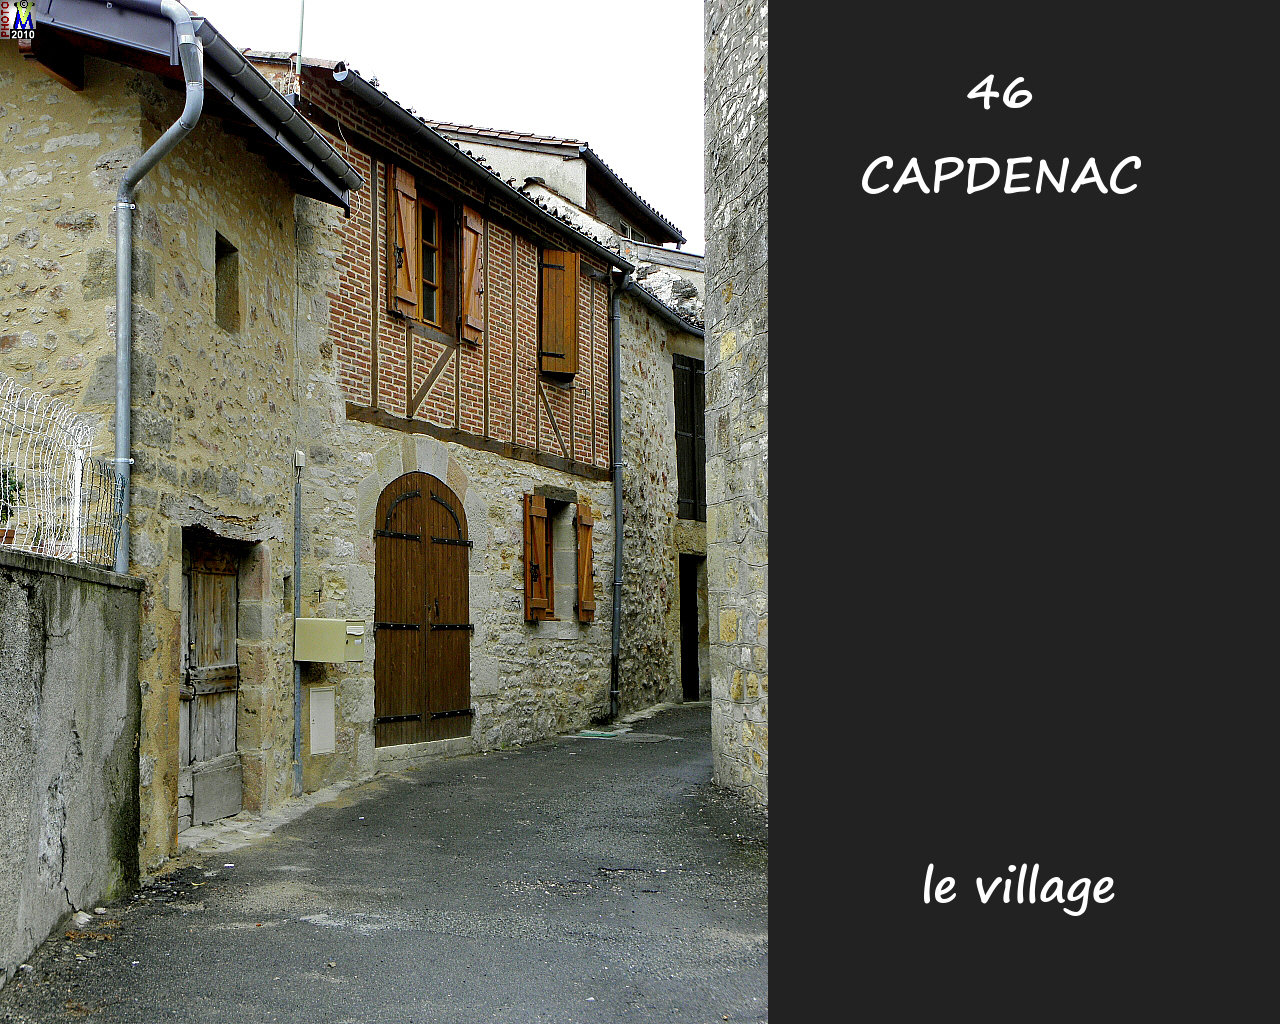 46CAPDENAC_village_150.jpg